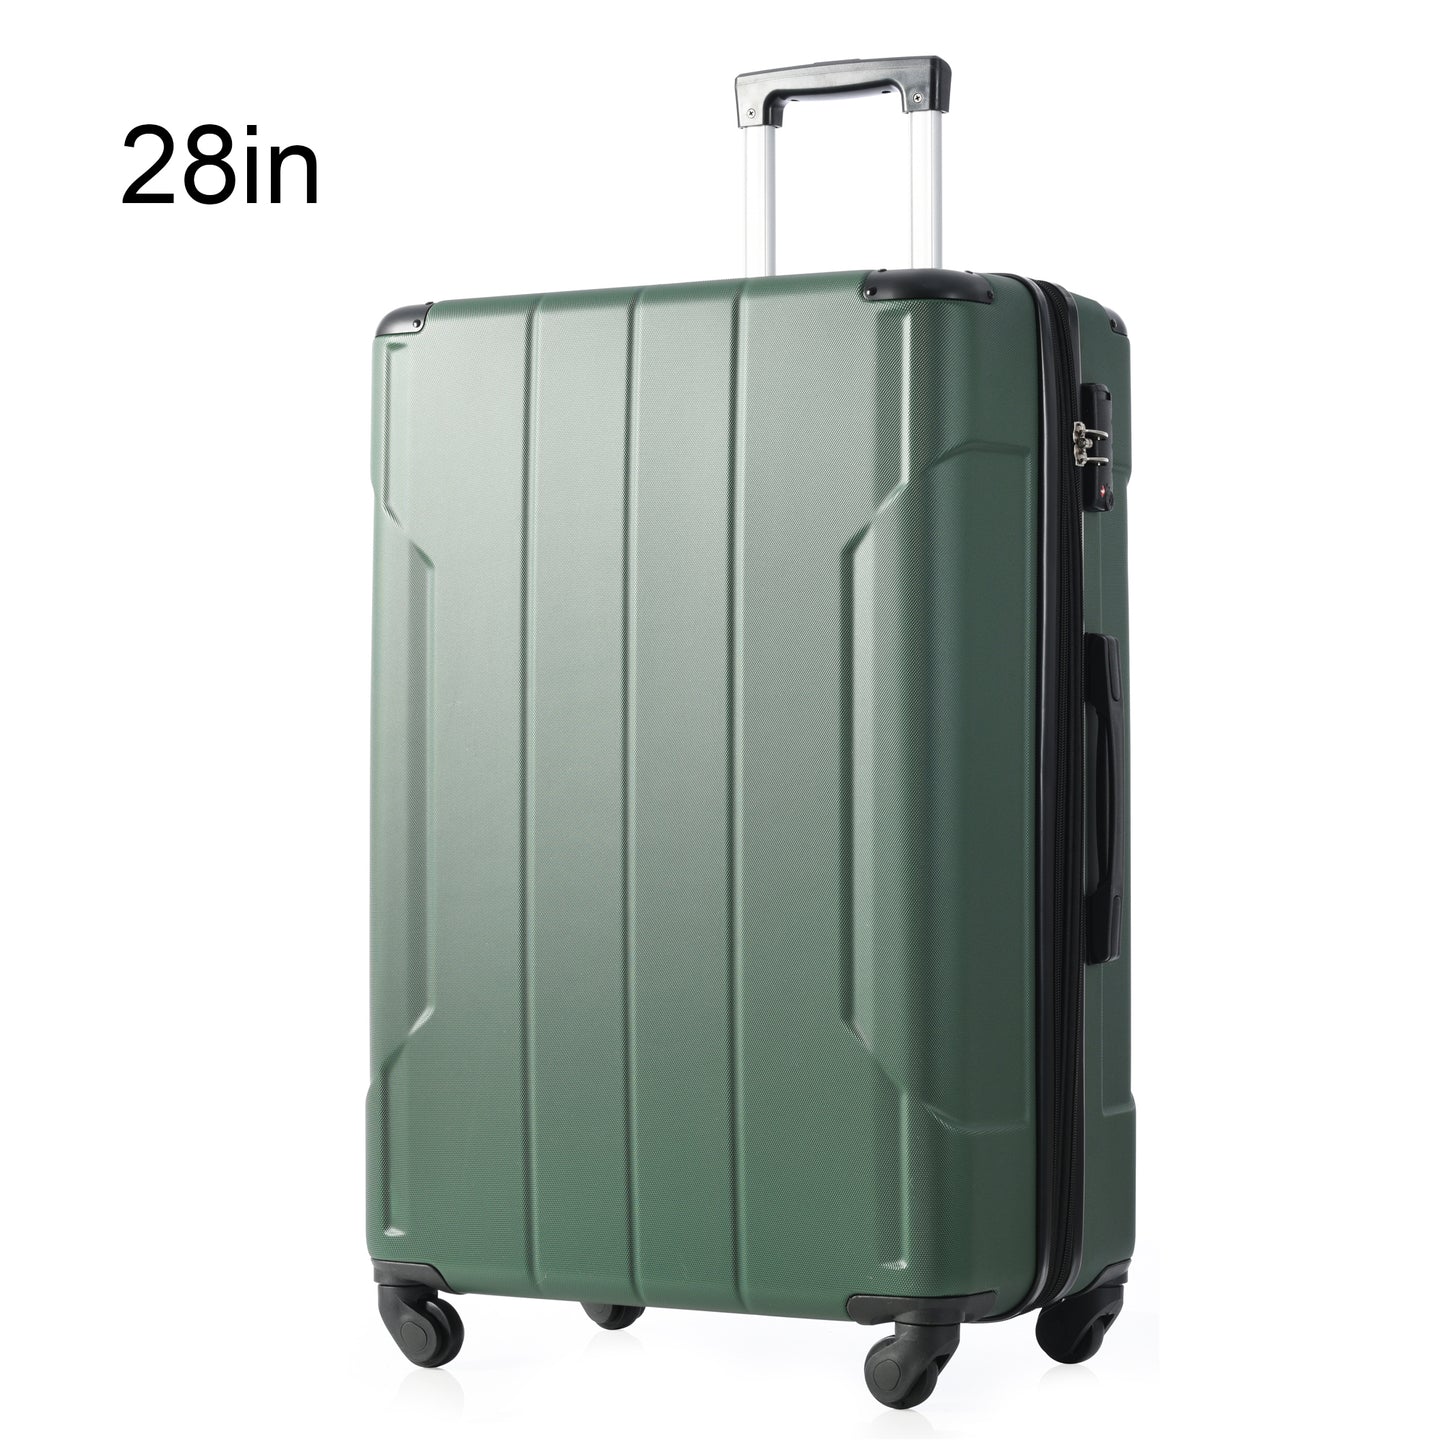 Valise rigide à roulettes avec serrure TSA légère et extensible 28'' vert + ABS